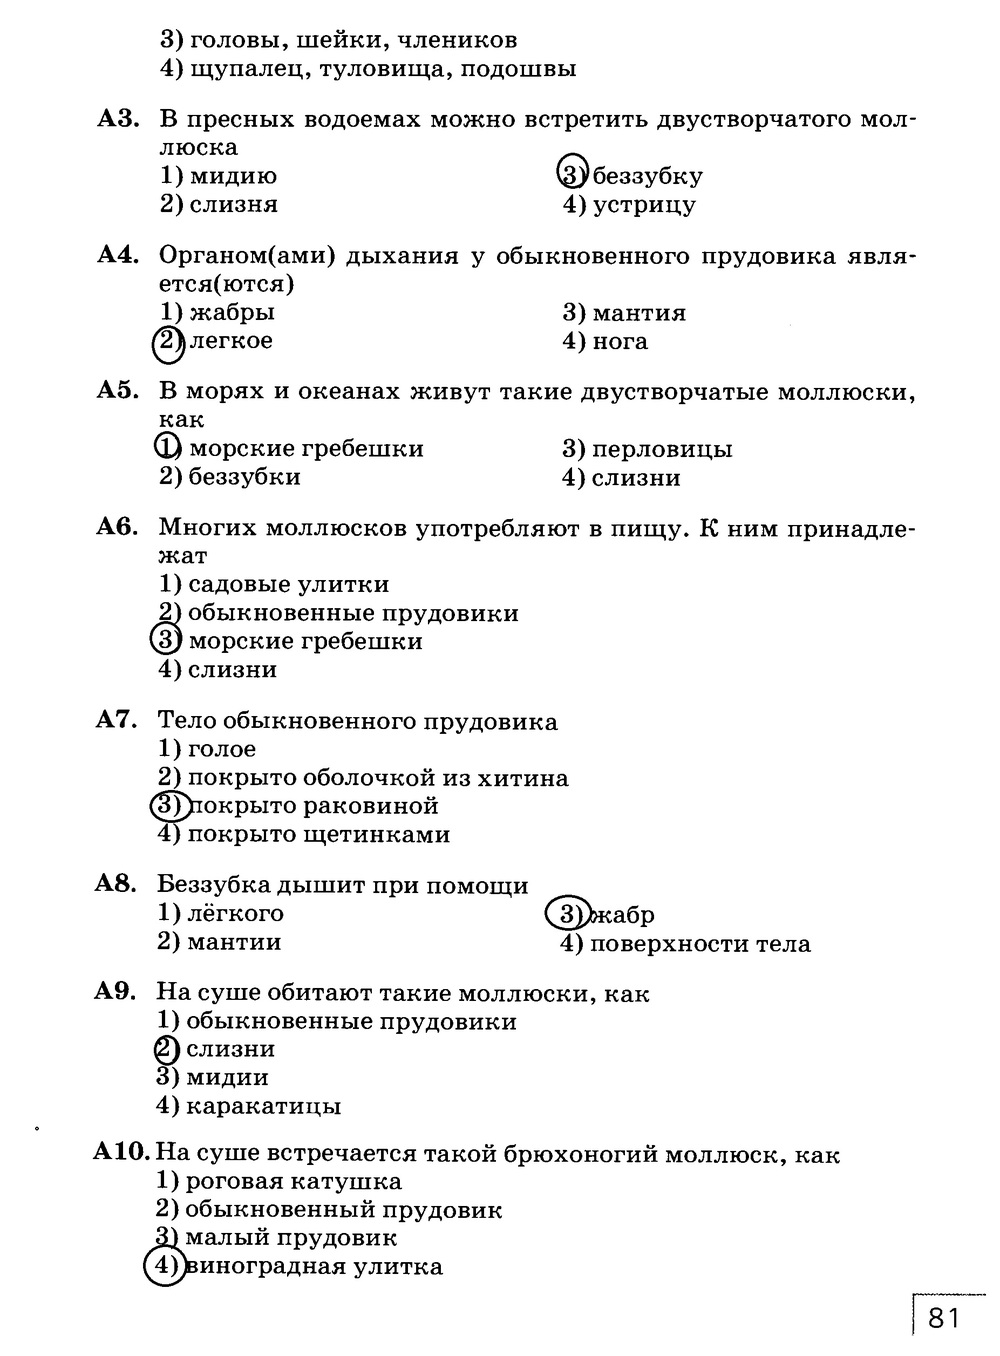 Рабочая тетрадь, 7 класс, Захаров В.Б., Сонин Н.И., 2015, задание: стр. 81